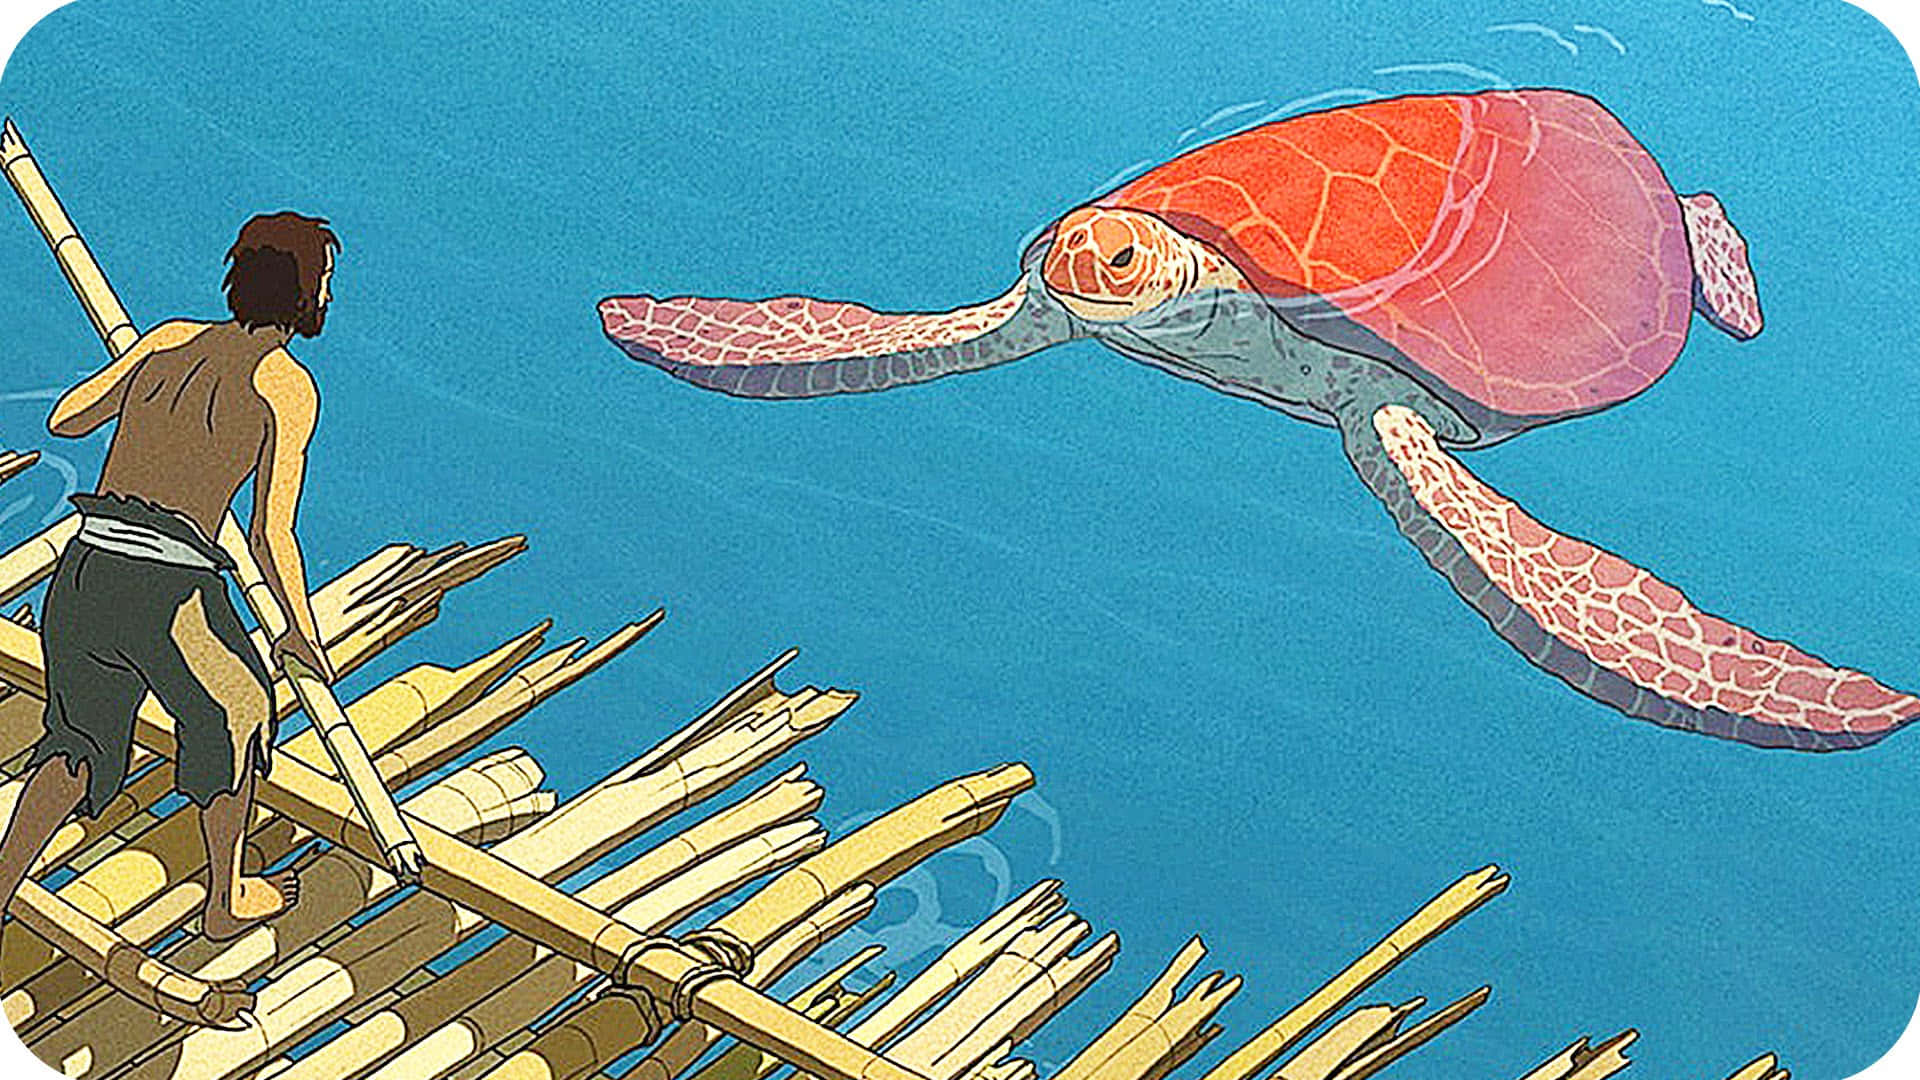 Einecartoon-schildkröte, Die Das Leben In Der Sonne Genießt.